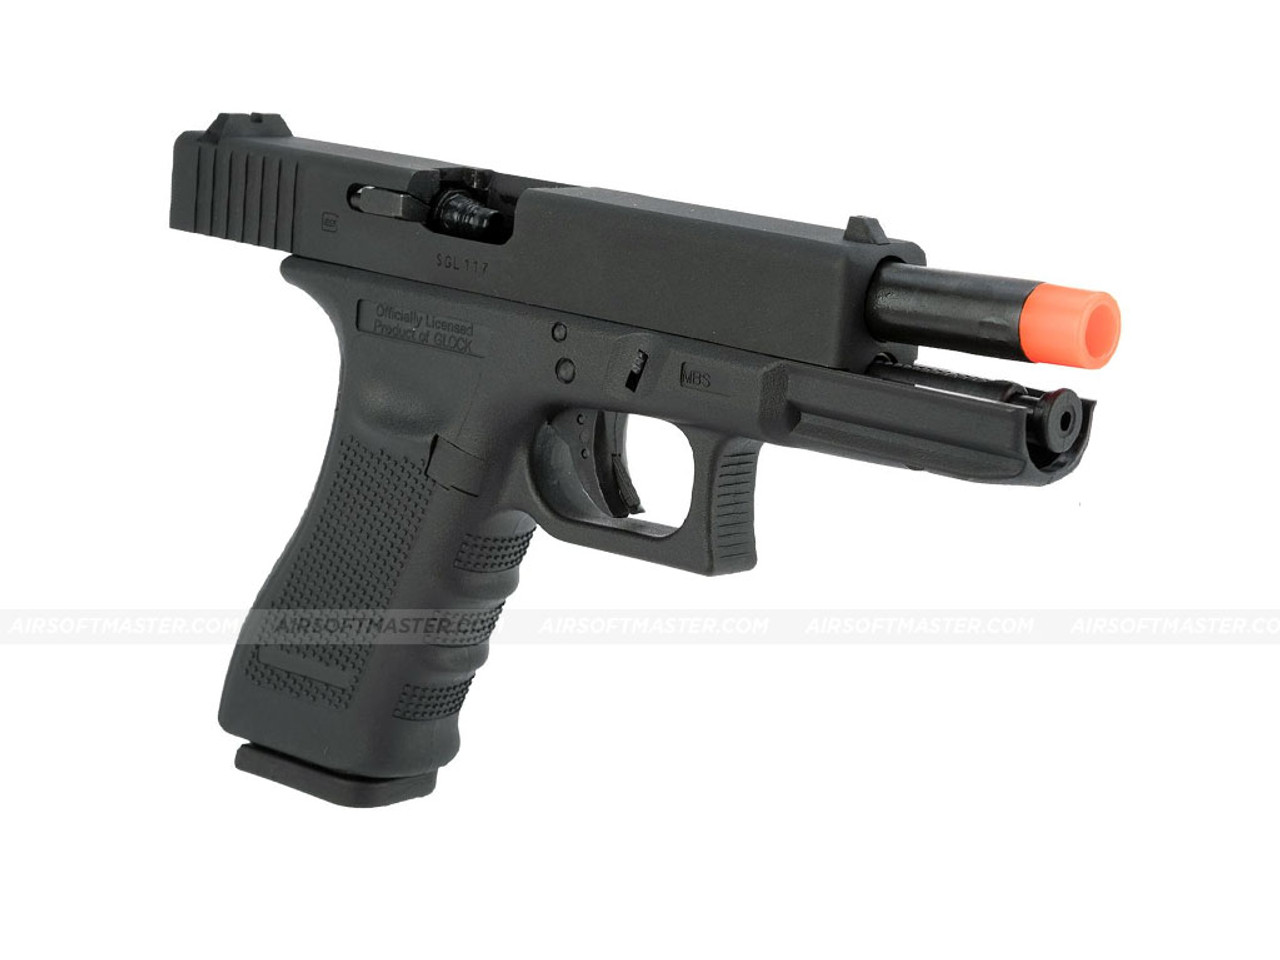 Glock 17 Gen4 GBB Airsoft Gun, Best Glock Accessories